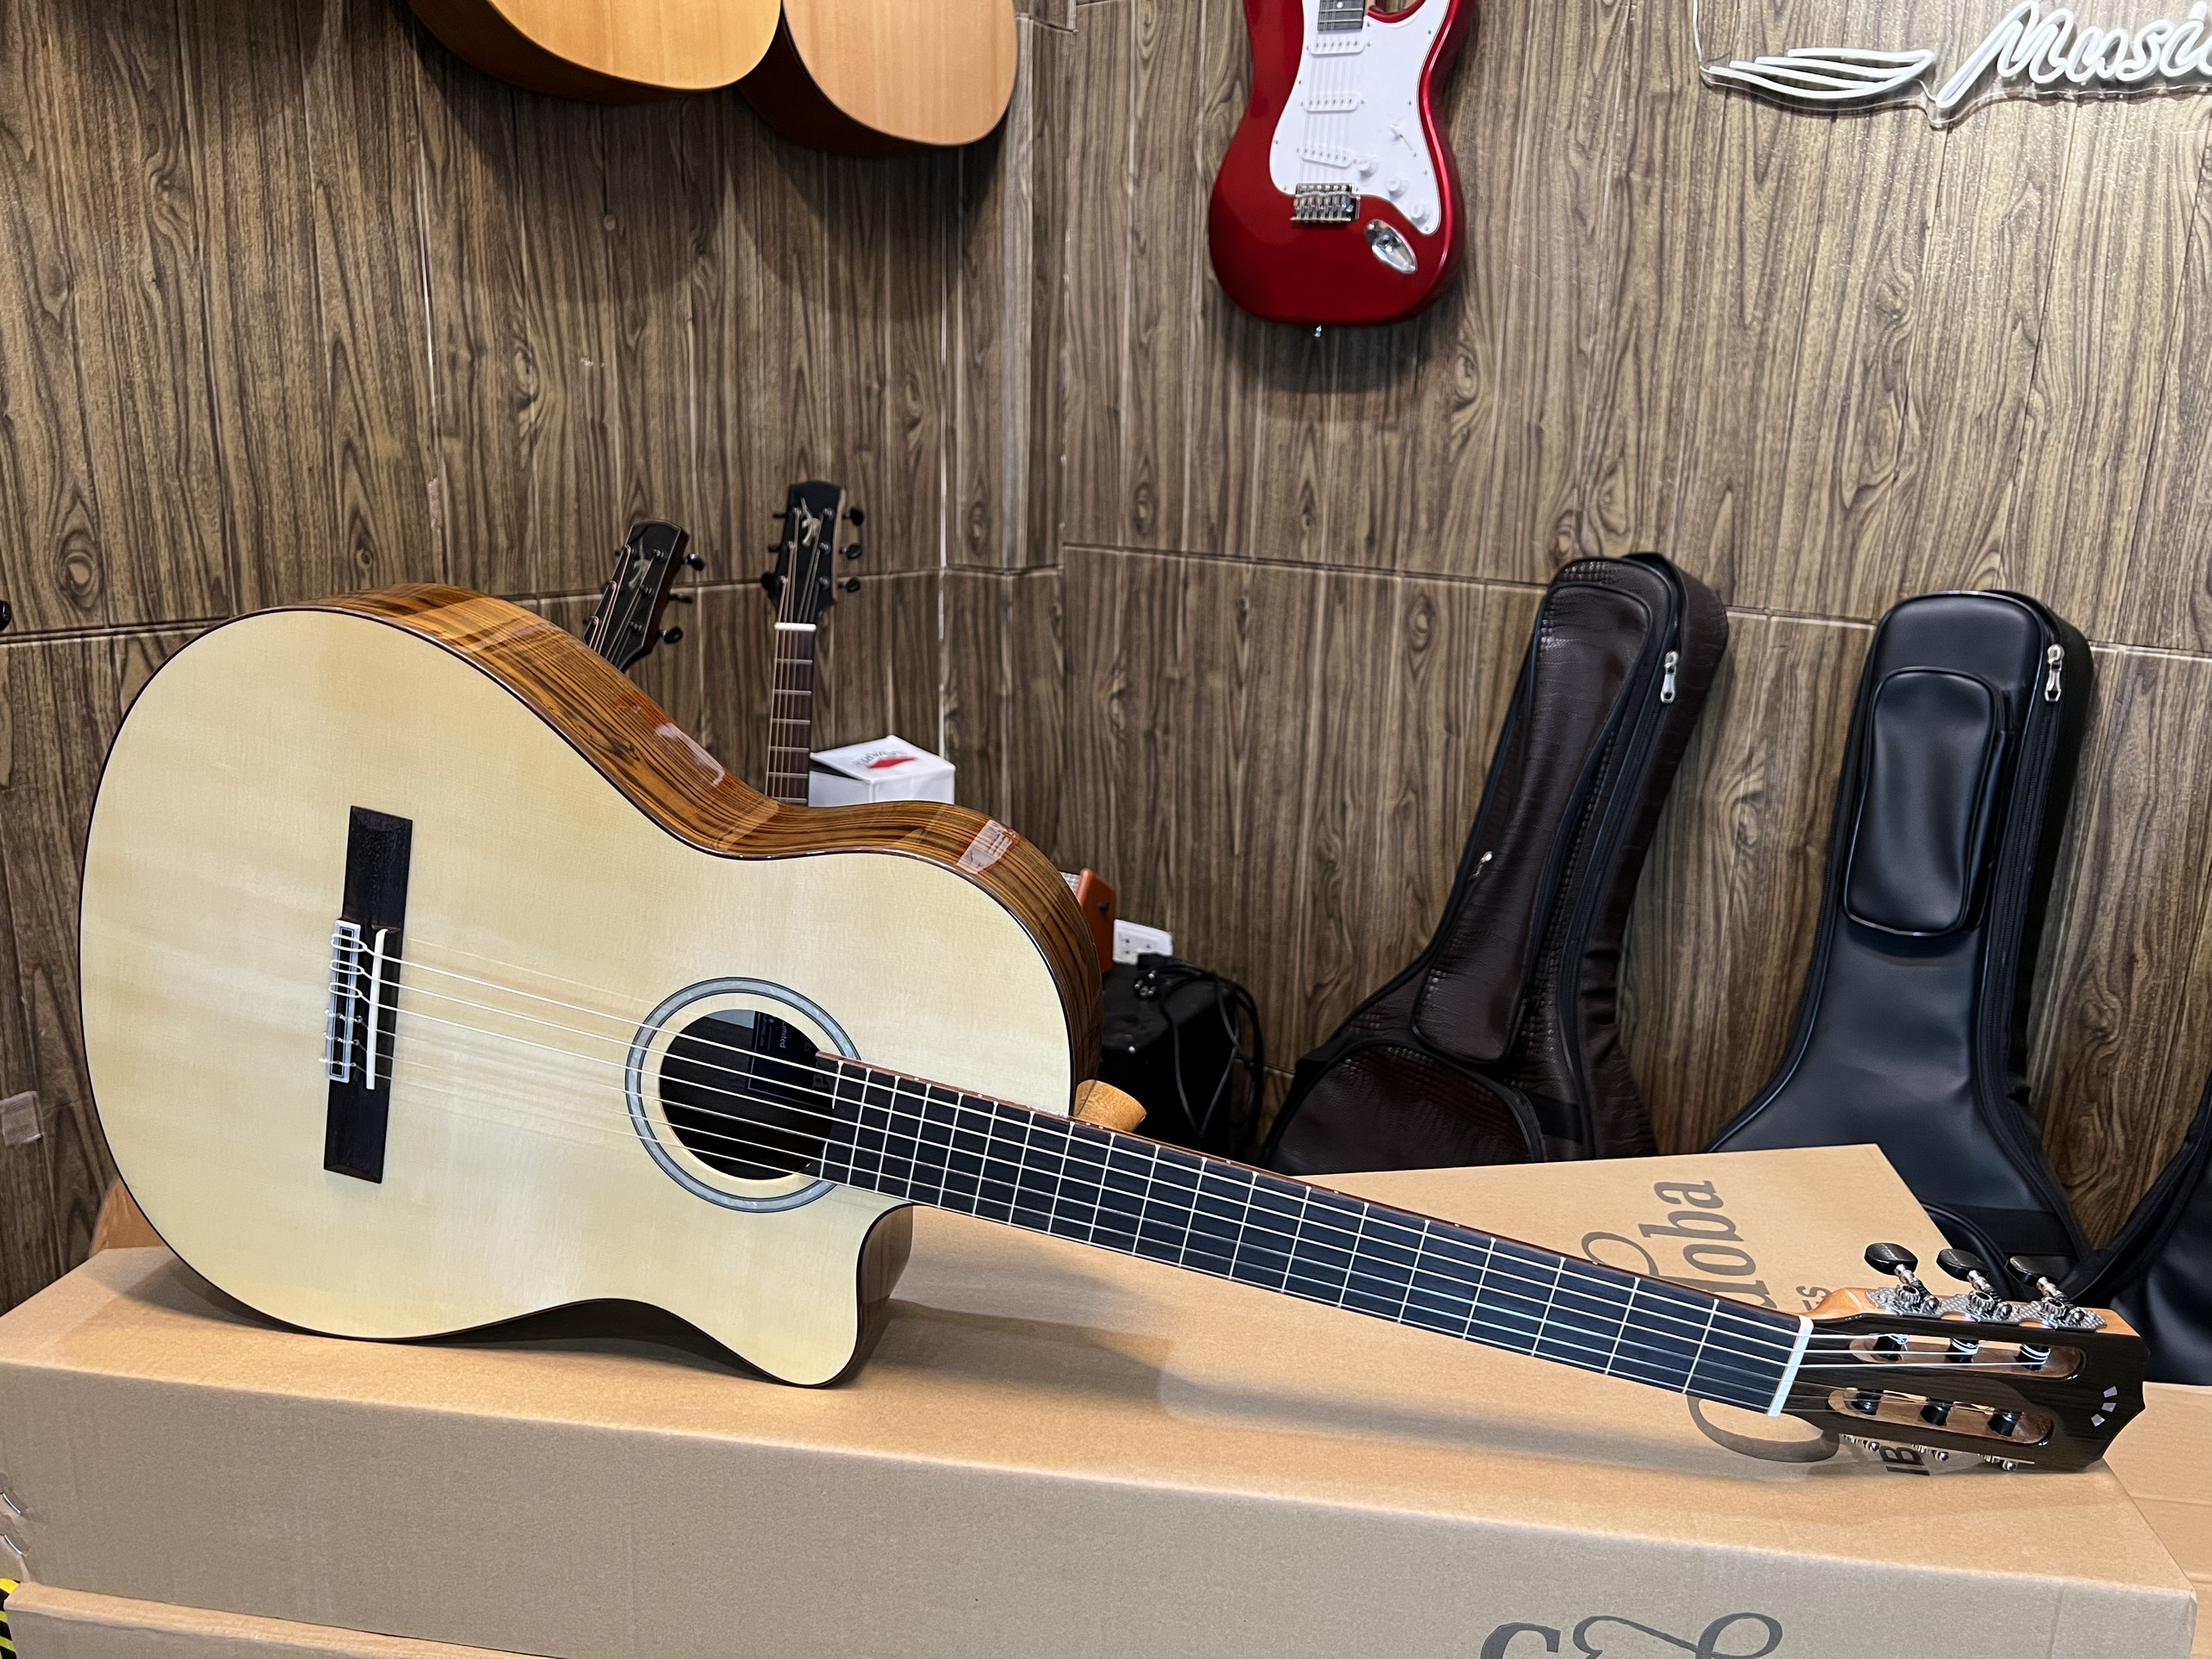 Shop Guitar Thái Nguyên, Địa Chỉ Bán Guitar Uy Tín, Sửa chữa, Lắp EQ đàn Guitar Chuyên Nghiệp